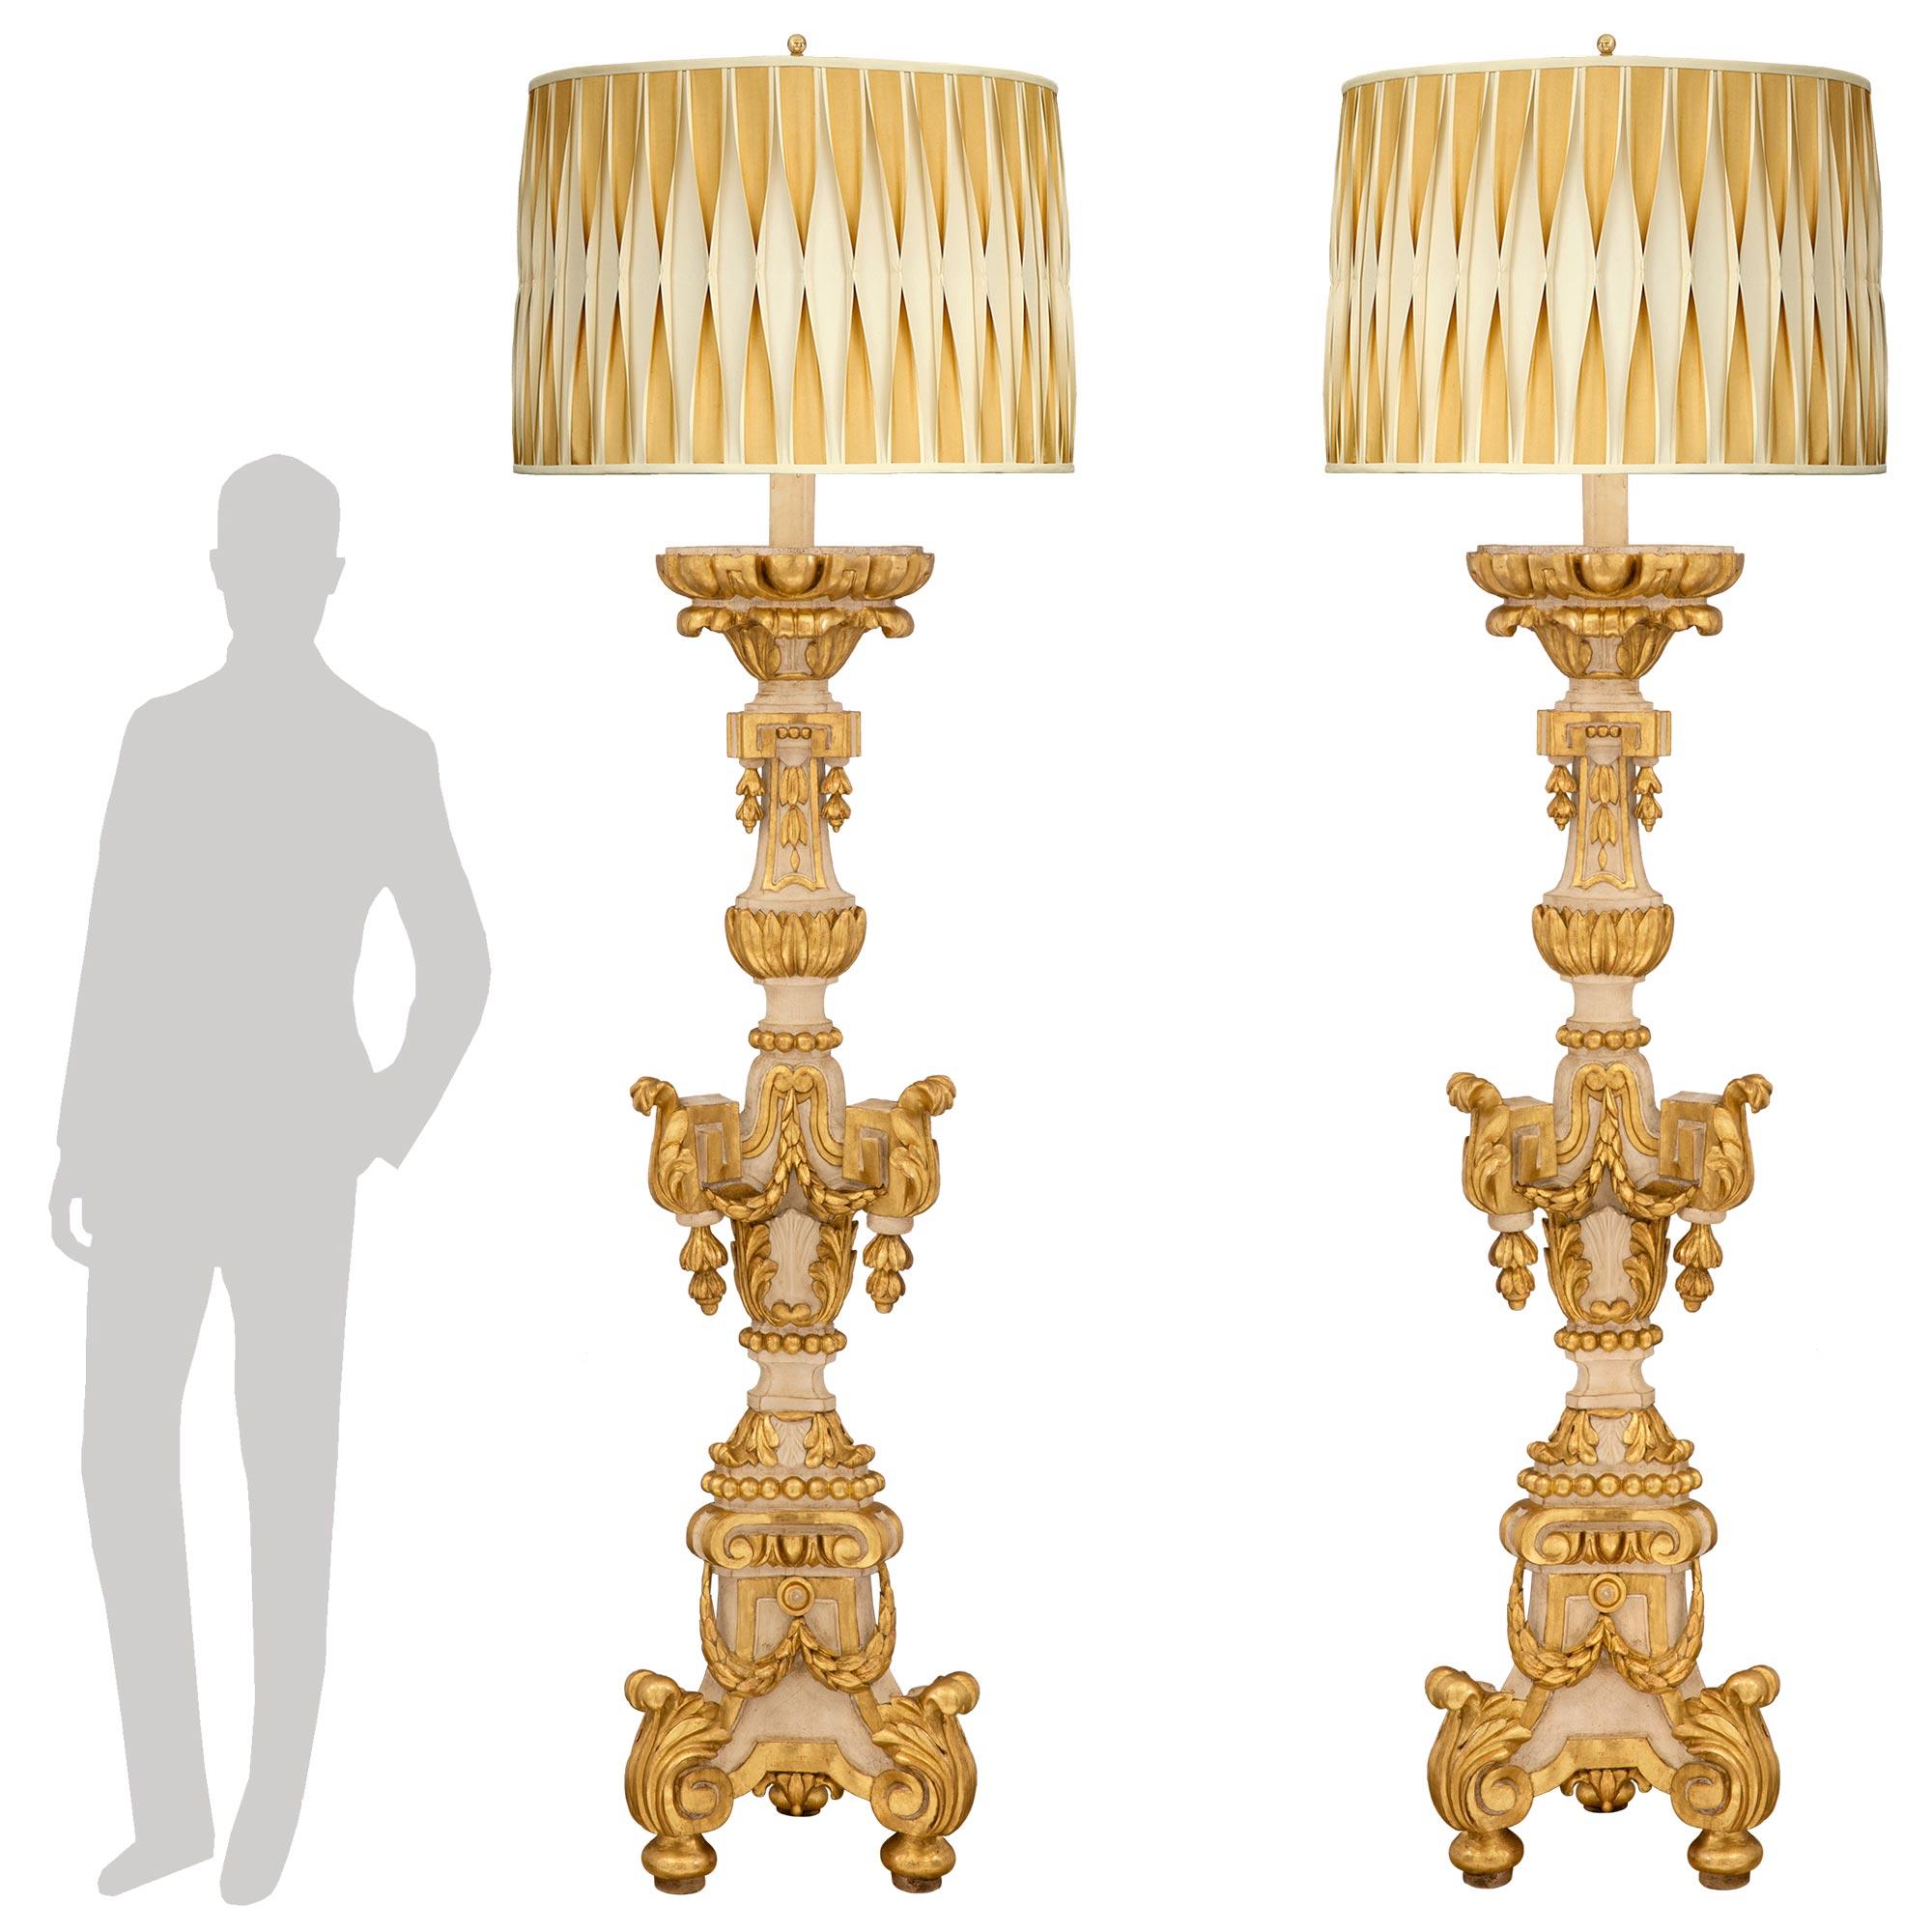 Une magnifique et très grande paire de lampadaires en bois patiné et doré de la période baroque du 18ème siècle. Chaque lampadaire torchère est surélevé par d'élégants pieds en forme de pointe, avec de grandes feuilles d'acanthe à la base